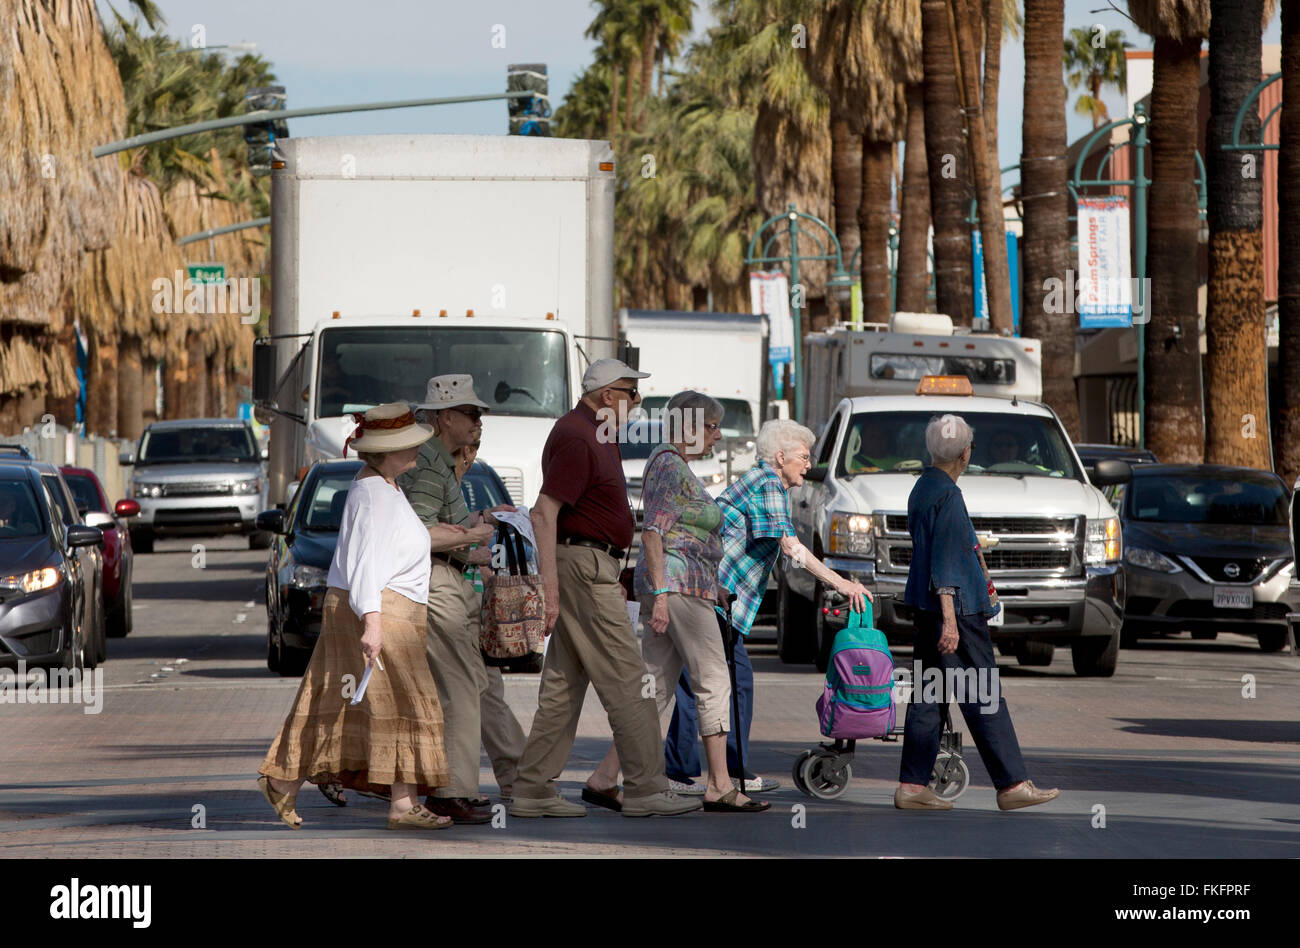 Los ciudadanos senior de cruzar una calle muy transitada, Palm Springs, California, EE.UU. Foto de stock